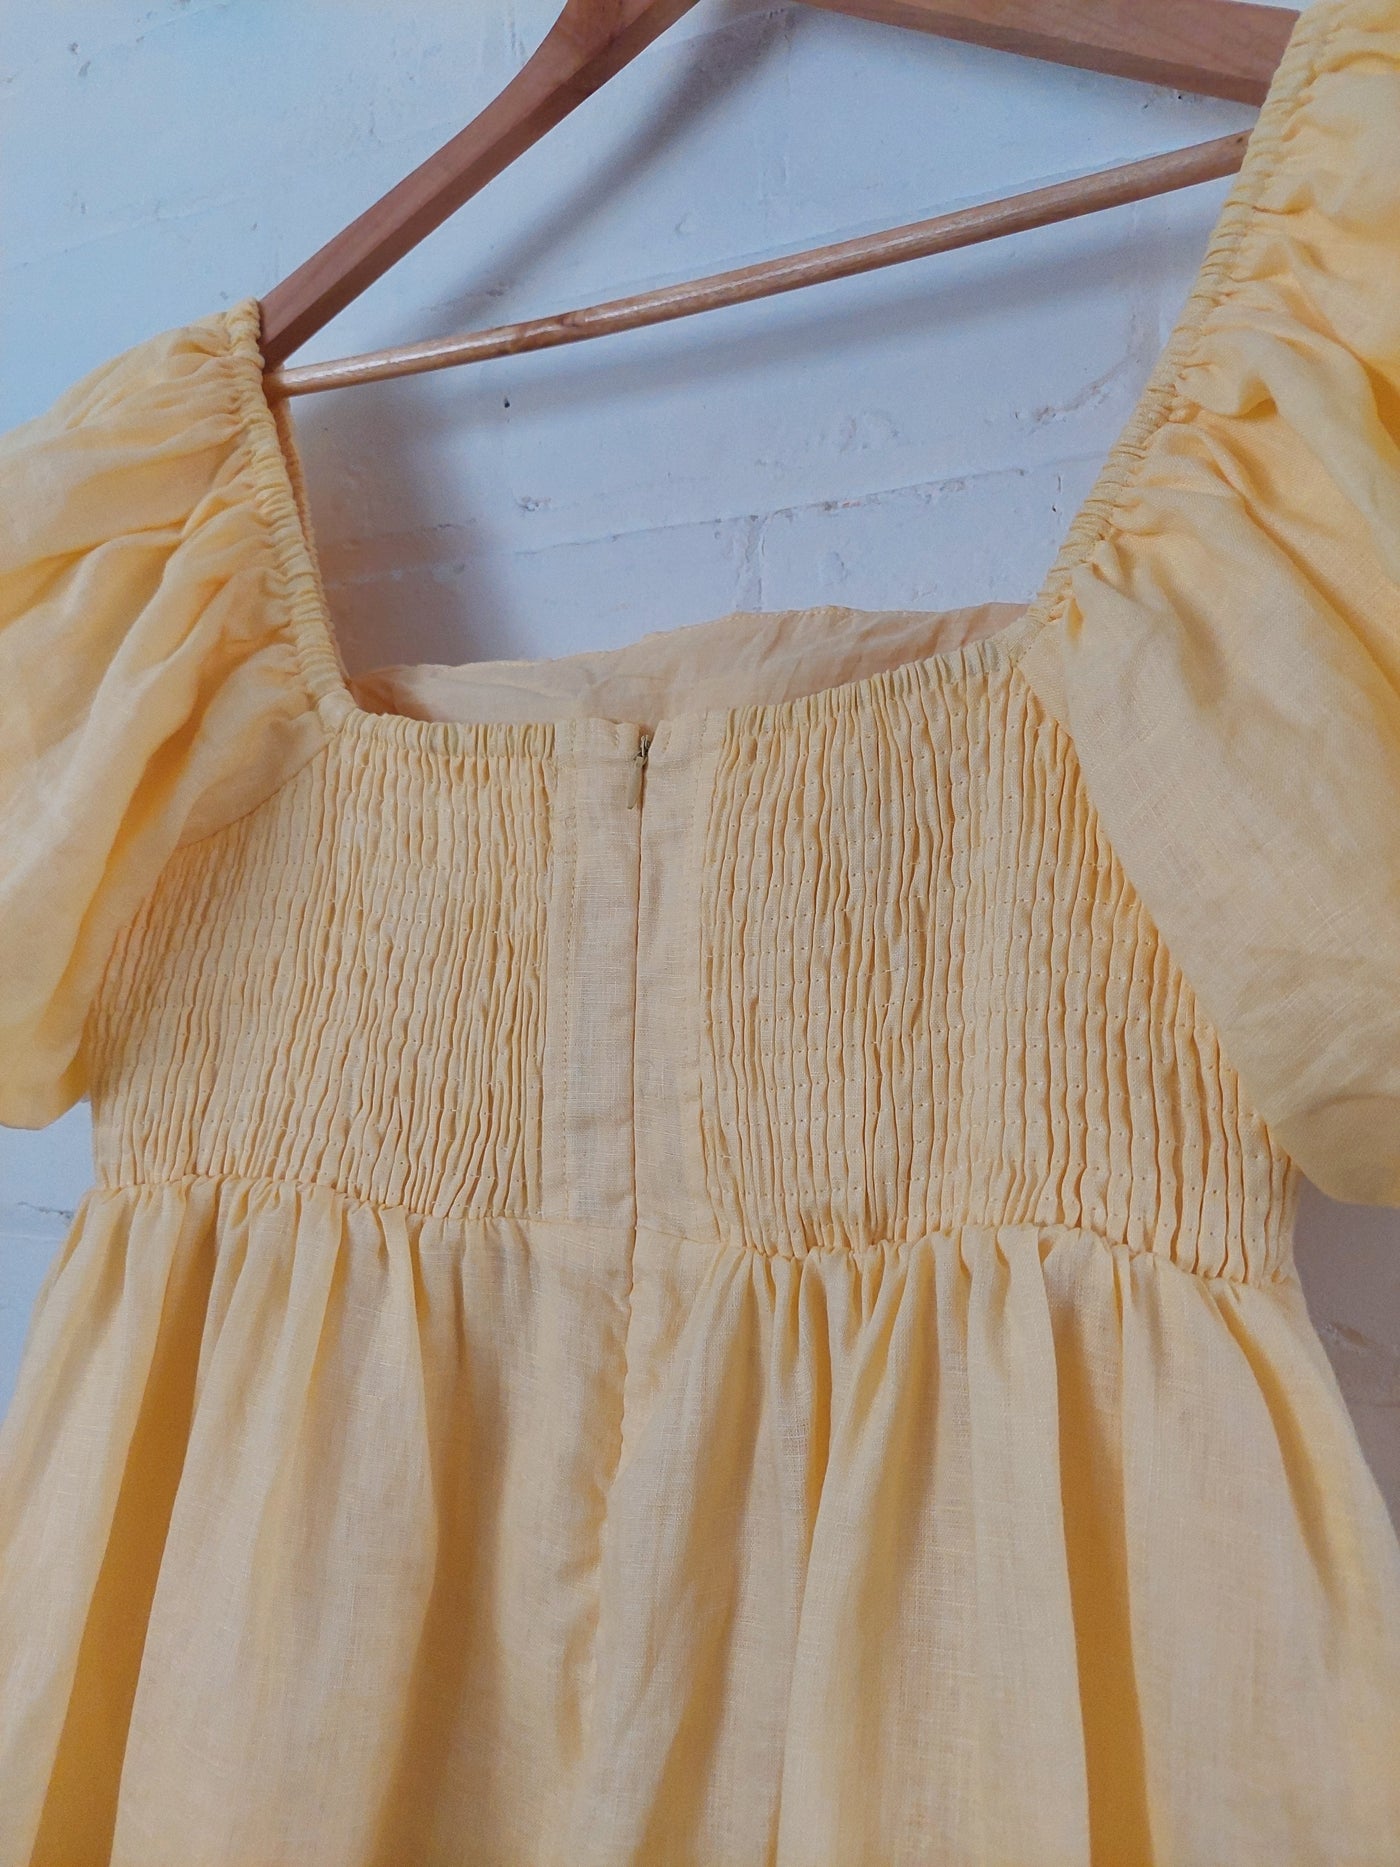 Sovere BNWT Relish Linen Mini Dress in Lemon Butter, Size 14